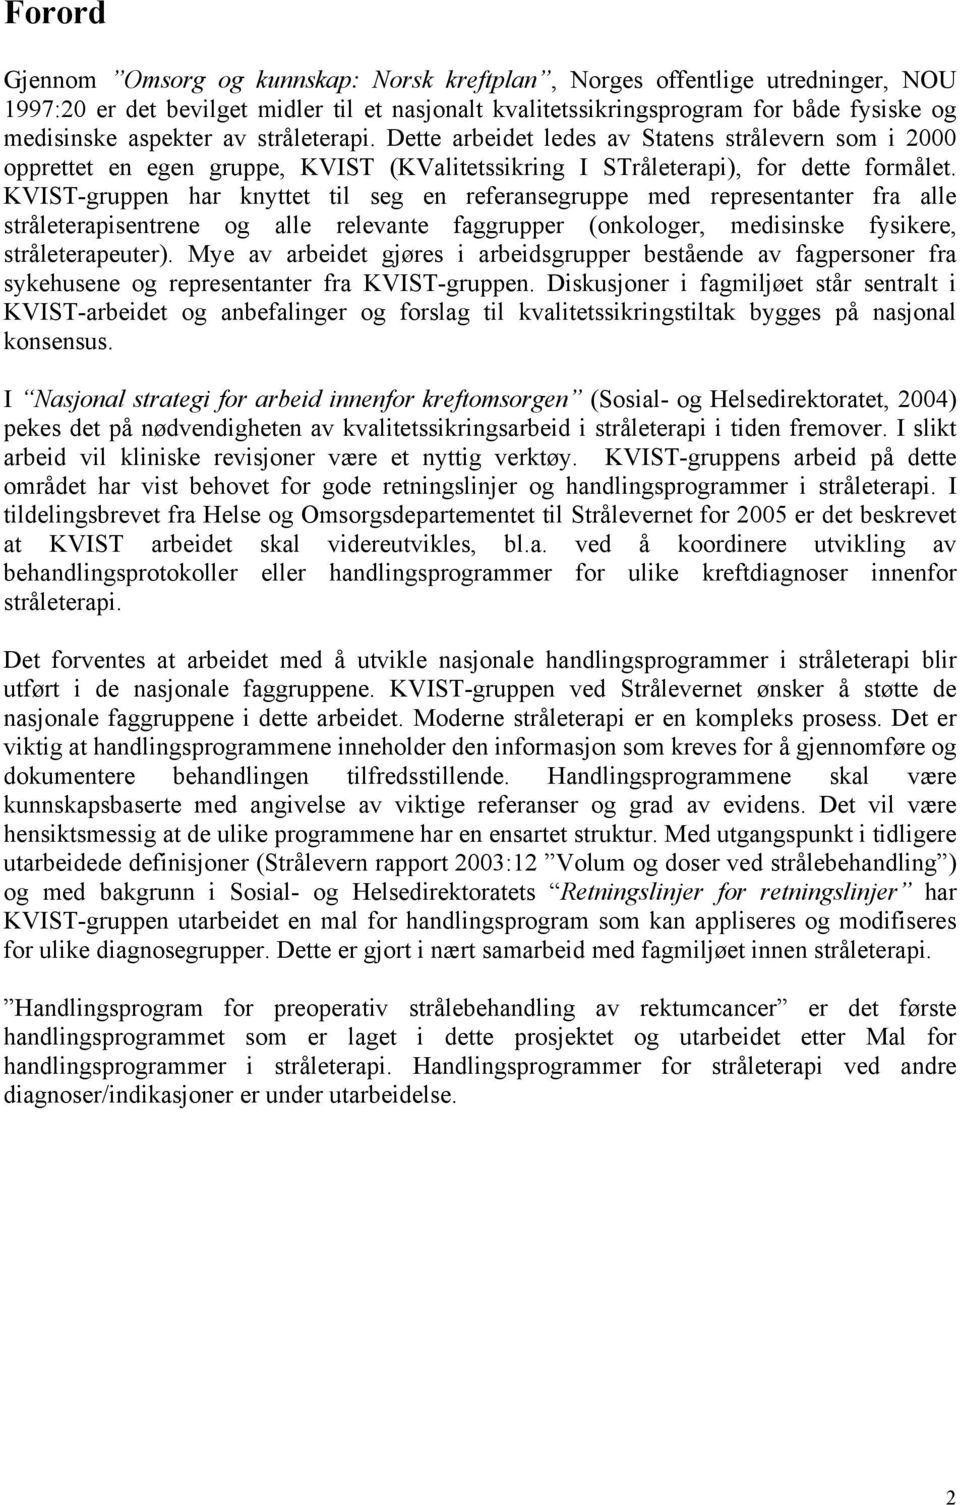 KVIST-gruppen har knyttet til seg en referansegruppe med representanter fra alle stråleterapisentrene og alle relevante faggrupper (onkologer, medisinske fysikere, stråleterapeuter).